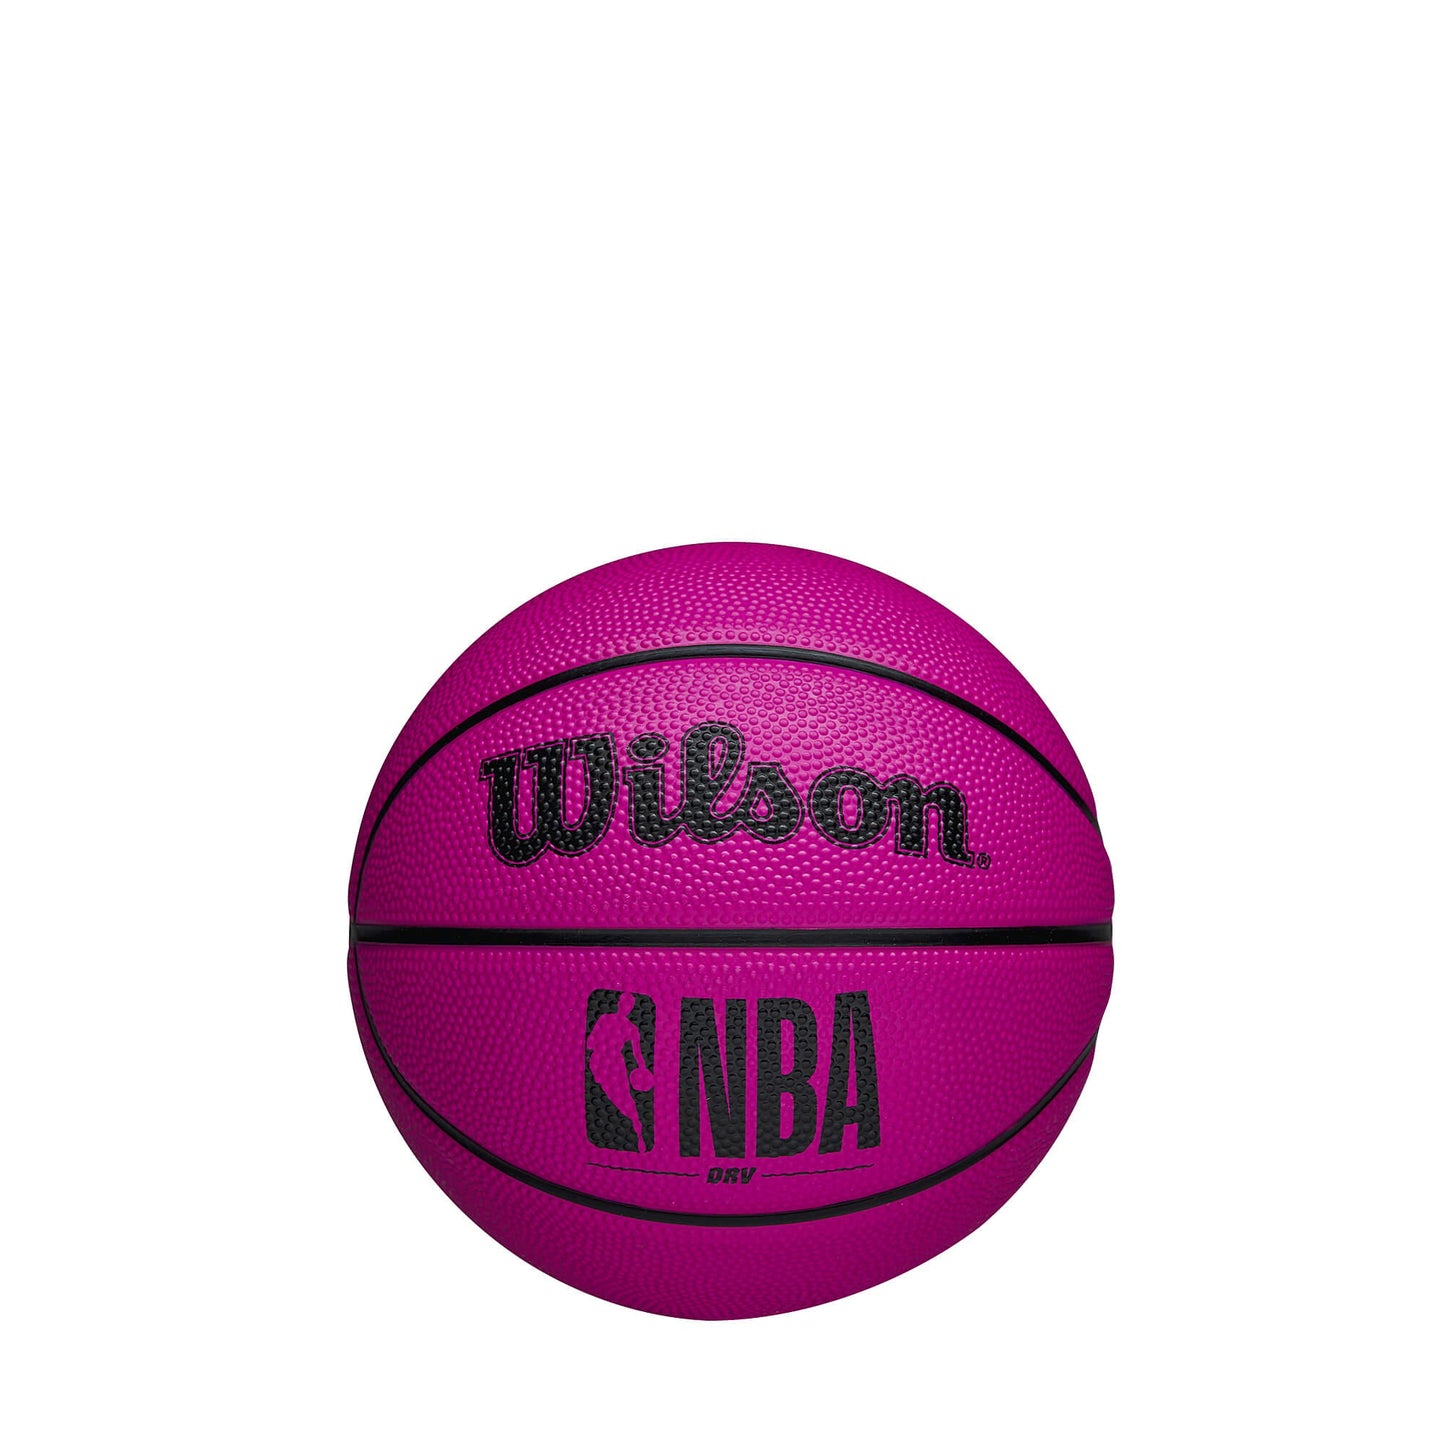 Wilson NBA Drv Bskt Mini - Pink (sz. 3)